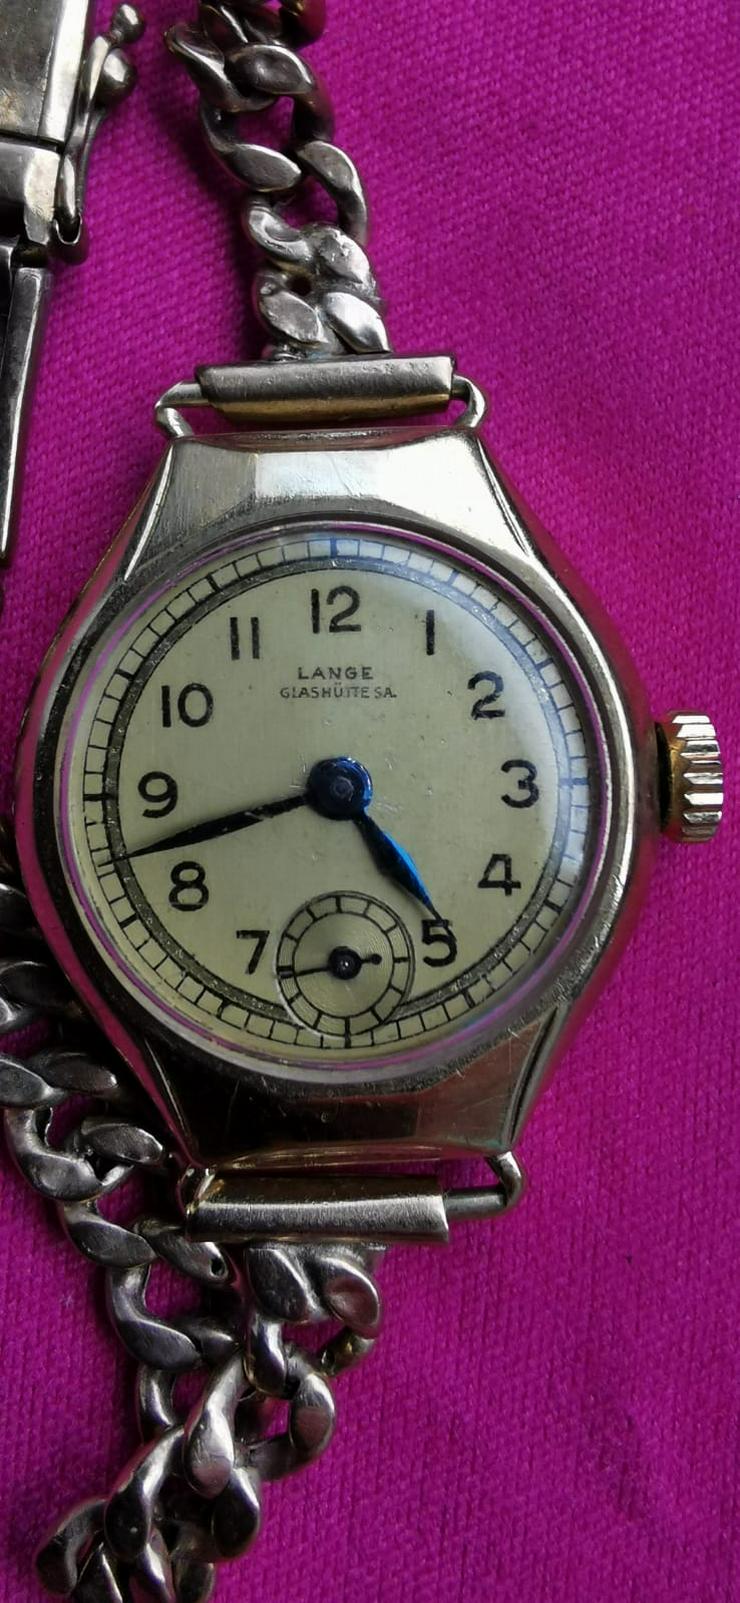 Damenuhr "Lange" Glashütte Antik - Uhren - Bild 1